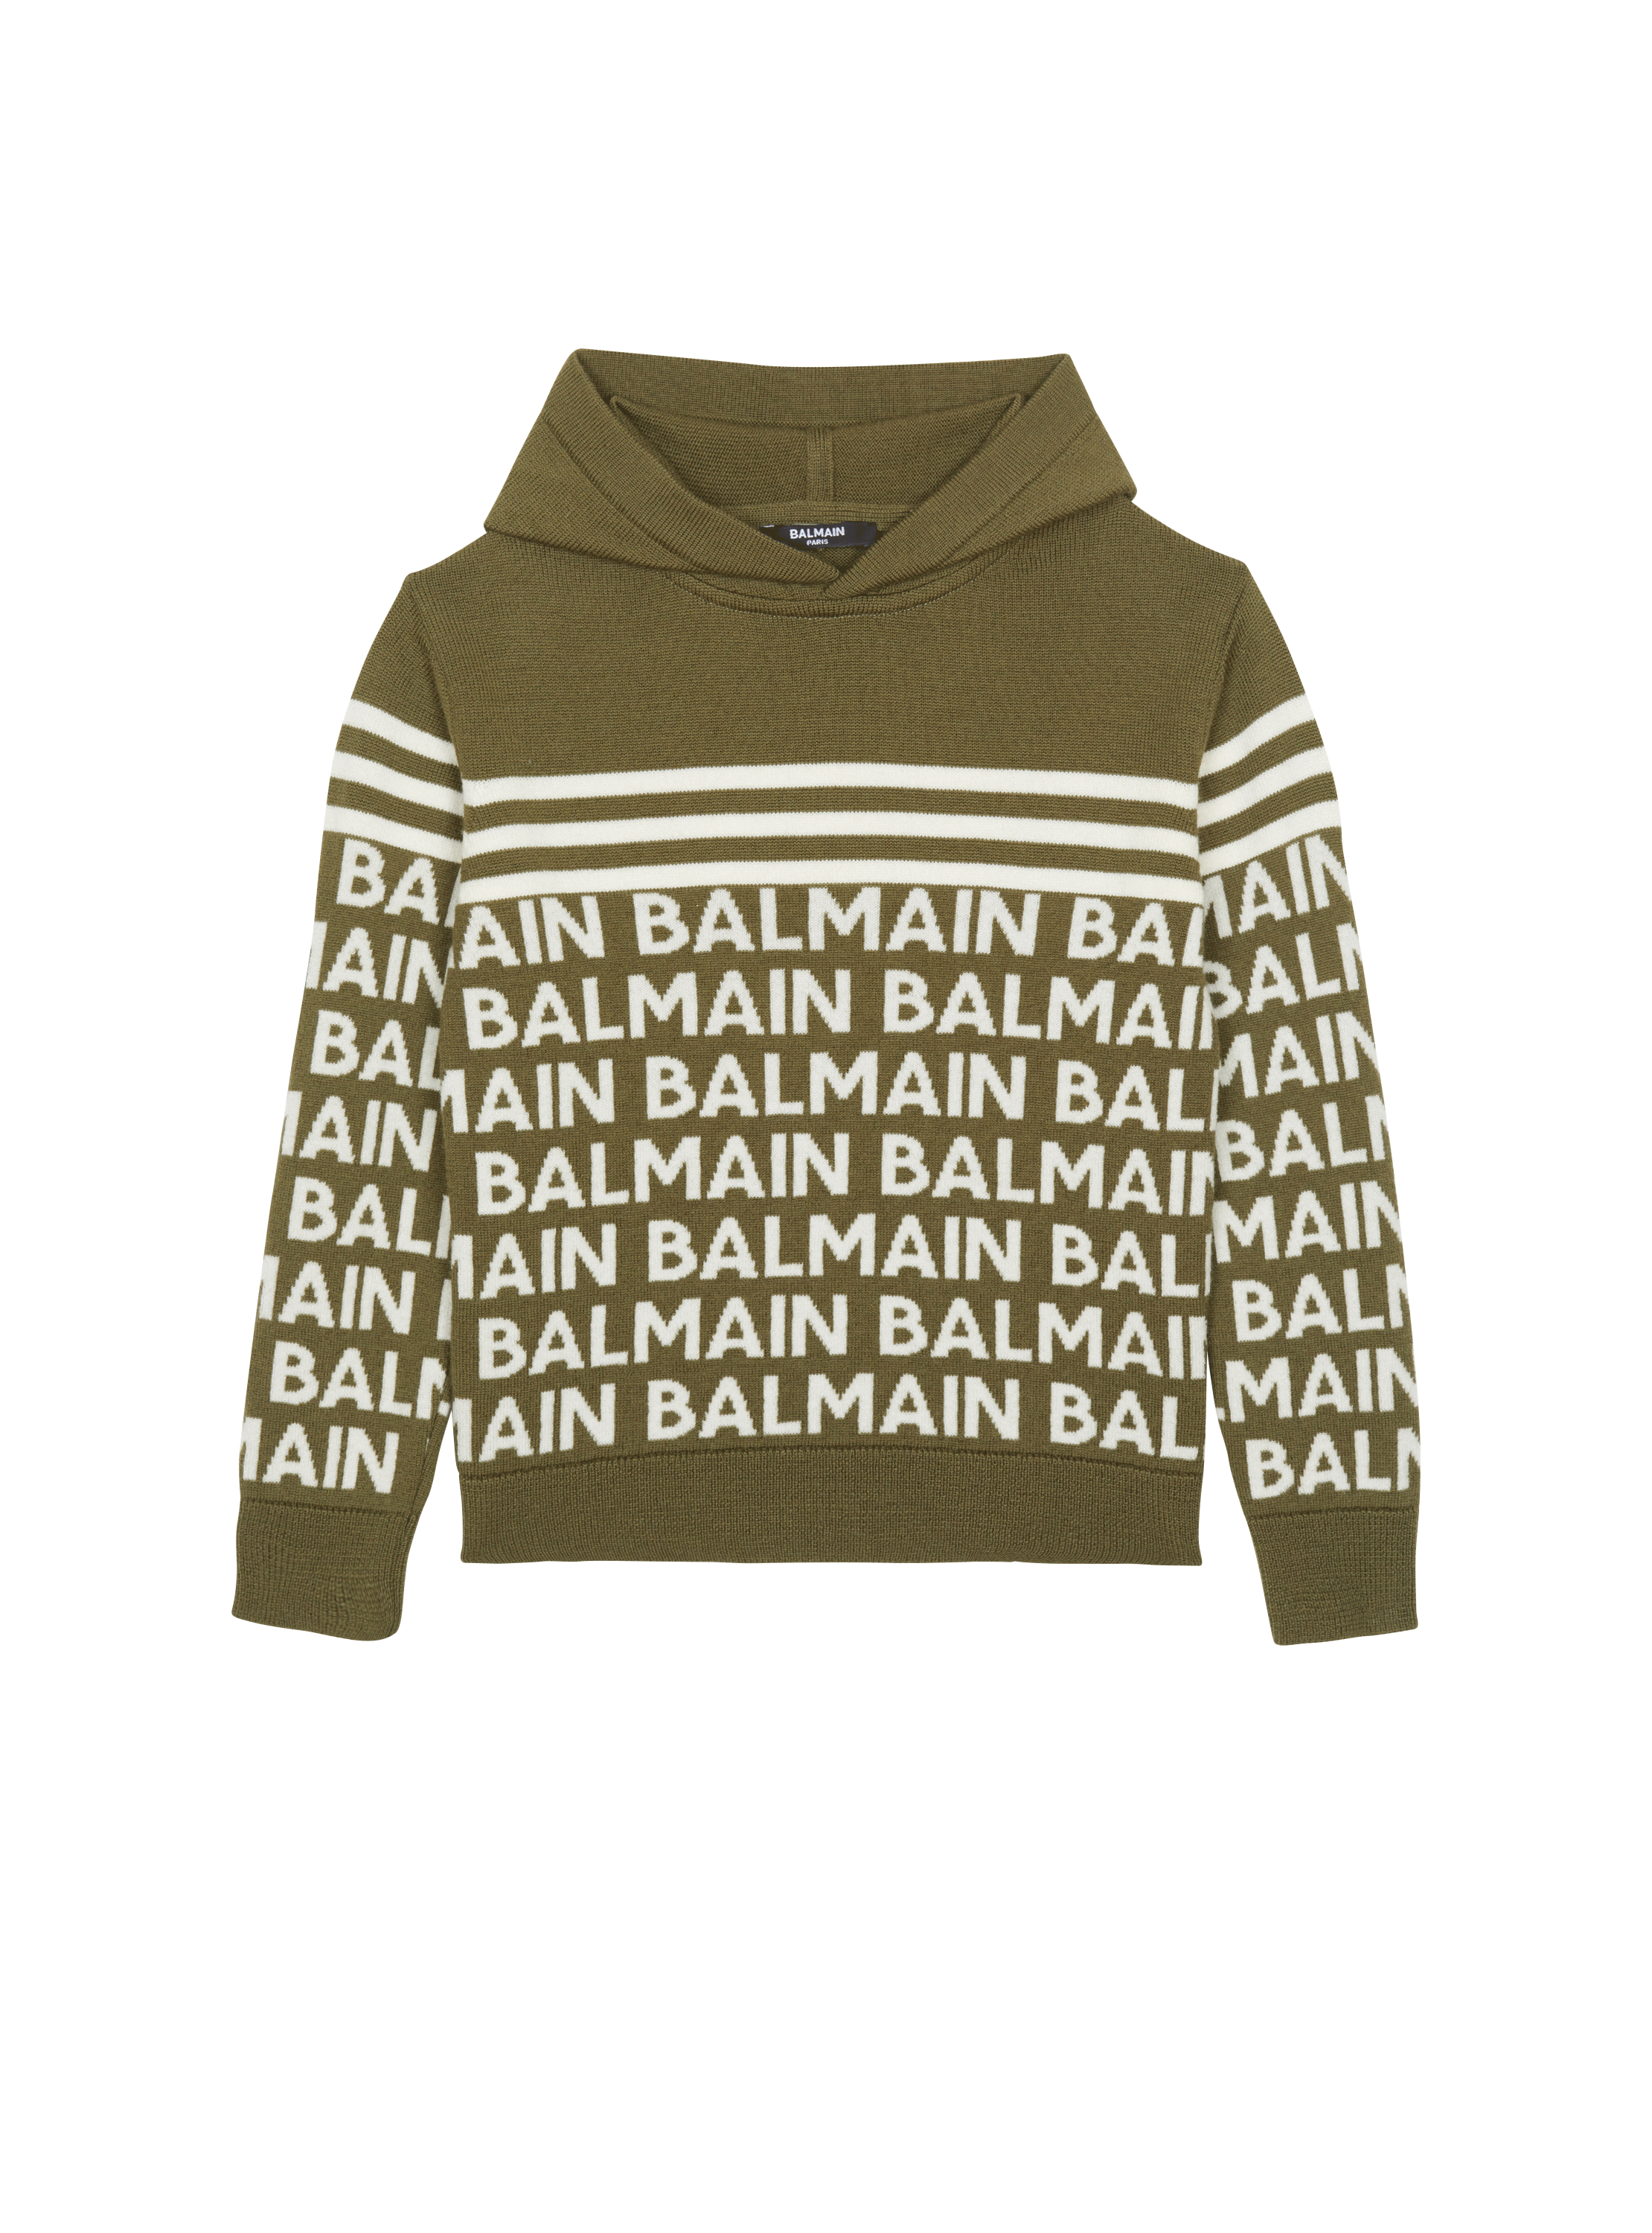 Balmain ファインニット フード付きセーター